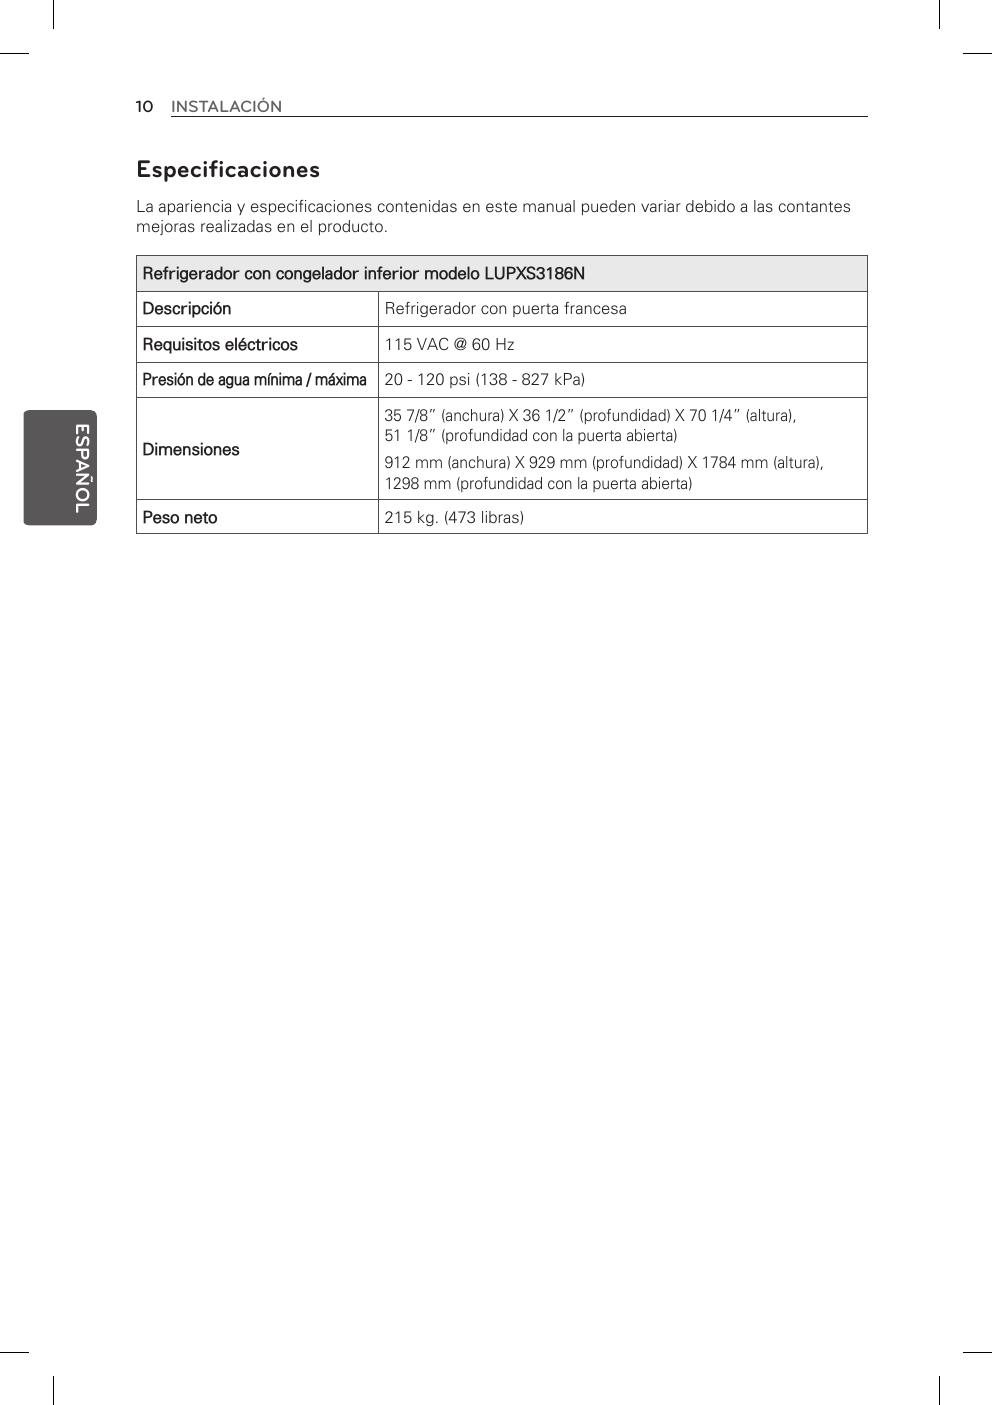 10 INSTALACIÓNESPAÑOLEspecificaciones La apariencia y especificaciones contenidas en este manual pueden variar debido a las contantes mejoras realizadas en el producto.Refrigerador con congelador inferior modelo LUPXS3186NDescripción Refrigerador con puerta francesaRequisitos eléctricos 115 VAC @ 60 HzPresión de agua mínima / máxima20 - 120 psi (138 - 827 kPa)Dimensiones35 7/8” (anchura) X 36 1/2” (profundidad) X 70 1/4” (altura),  51 1/8” (profundidad con la puerta abierta) 912 mm (anchura) X 929 mm (profundidad) X 1784 mm (altura),  1298 mm (profundidad con la puerta abierta)Peso neto 215 kg. (473 libras)